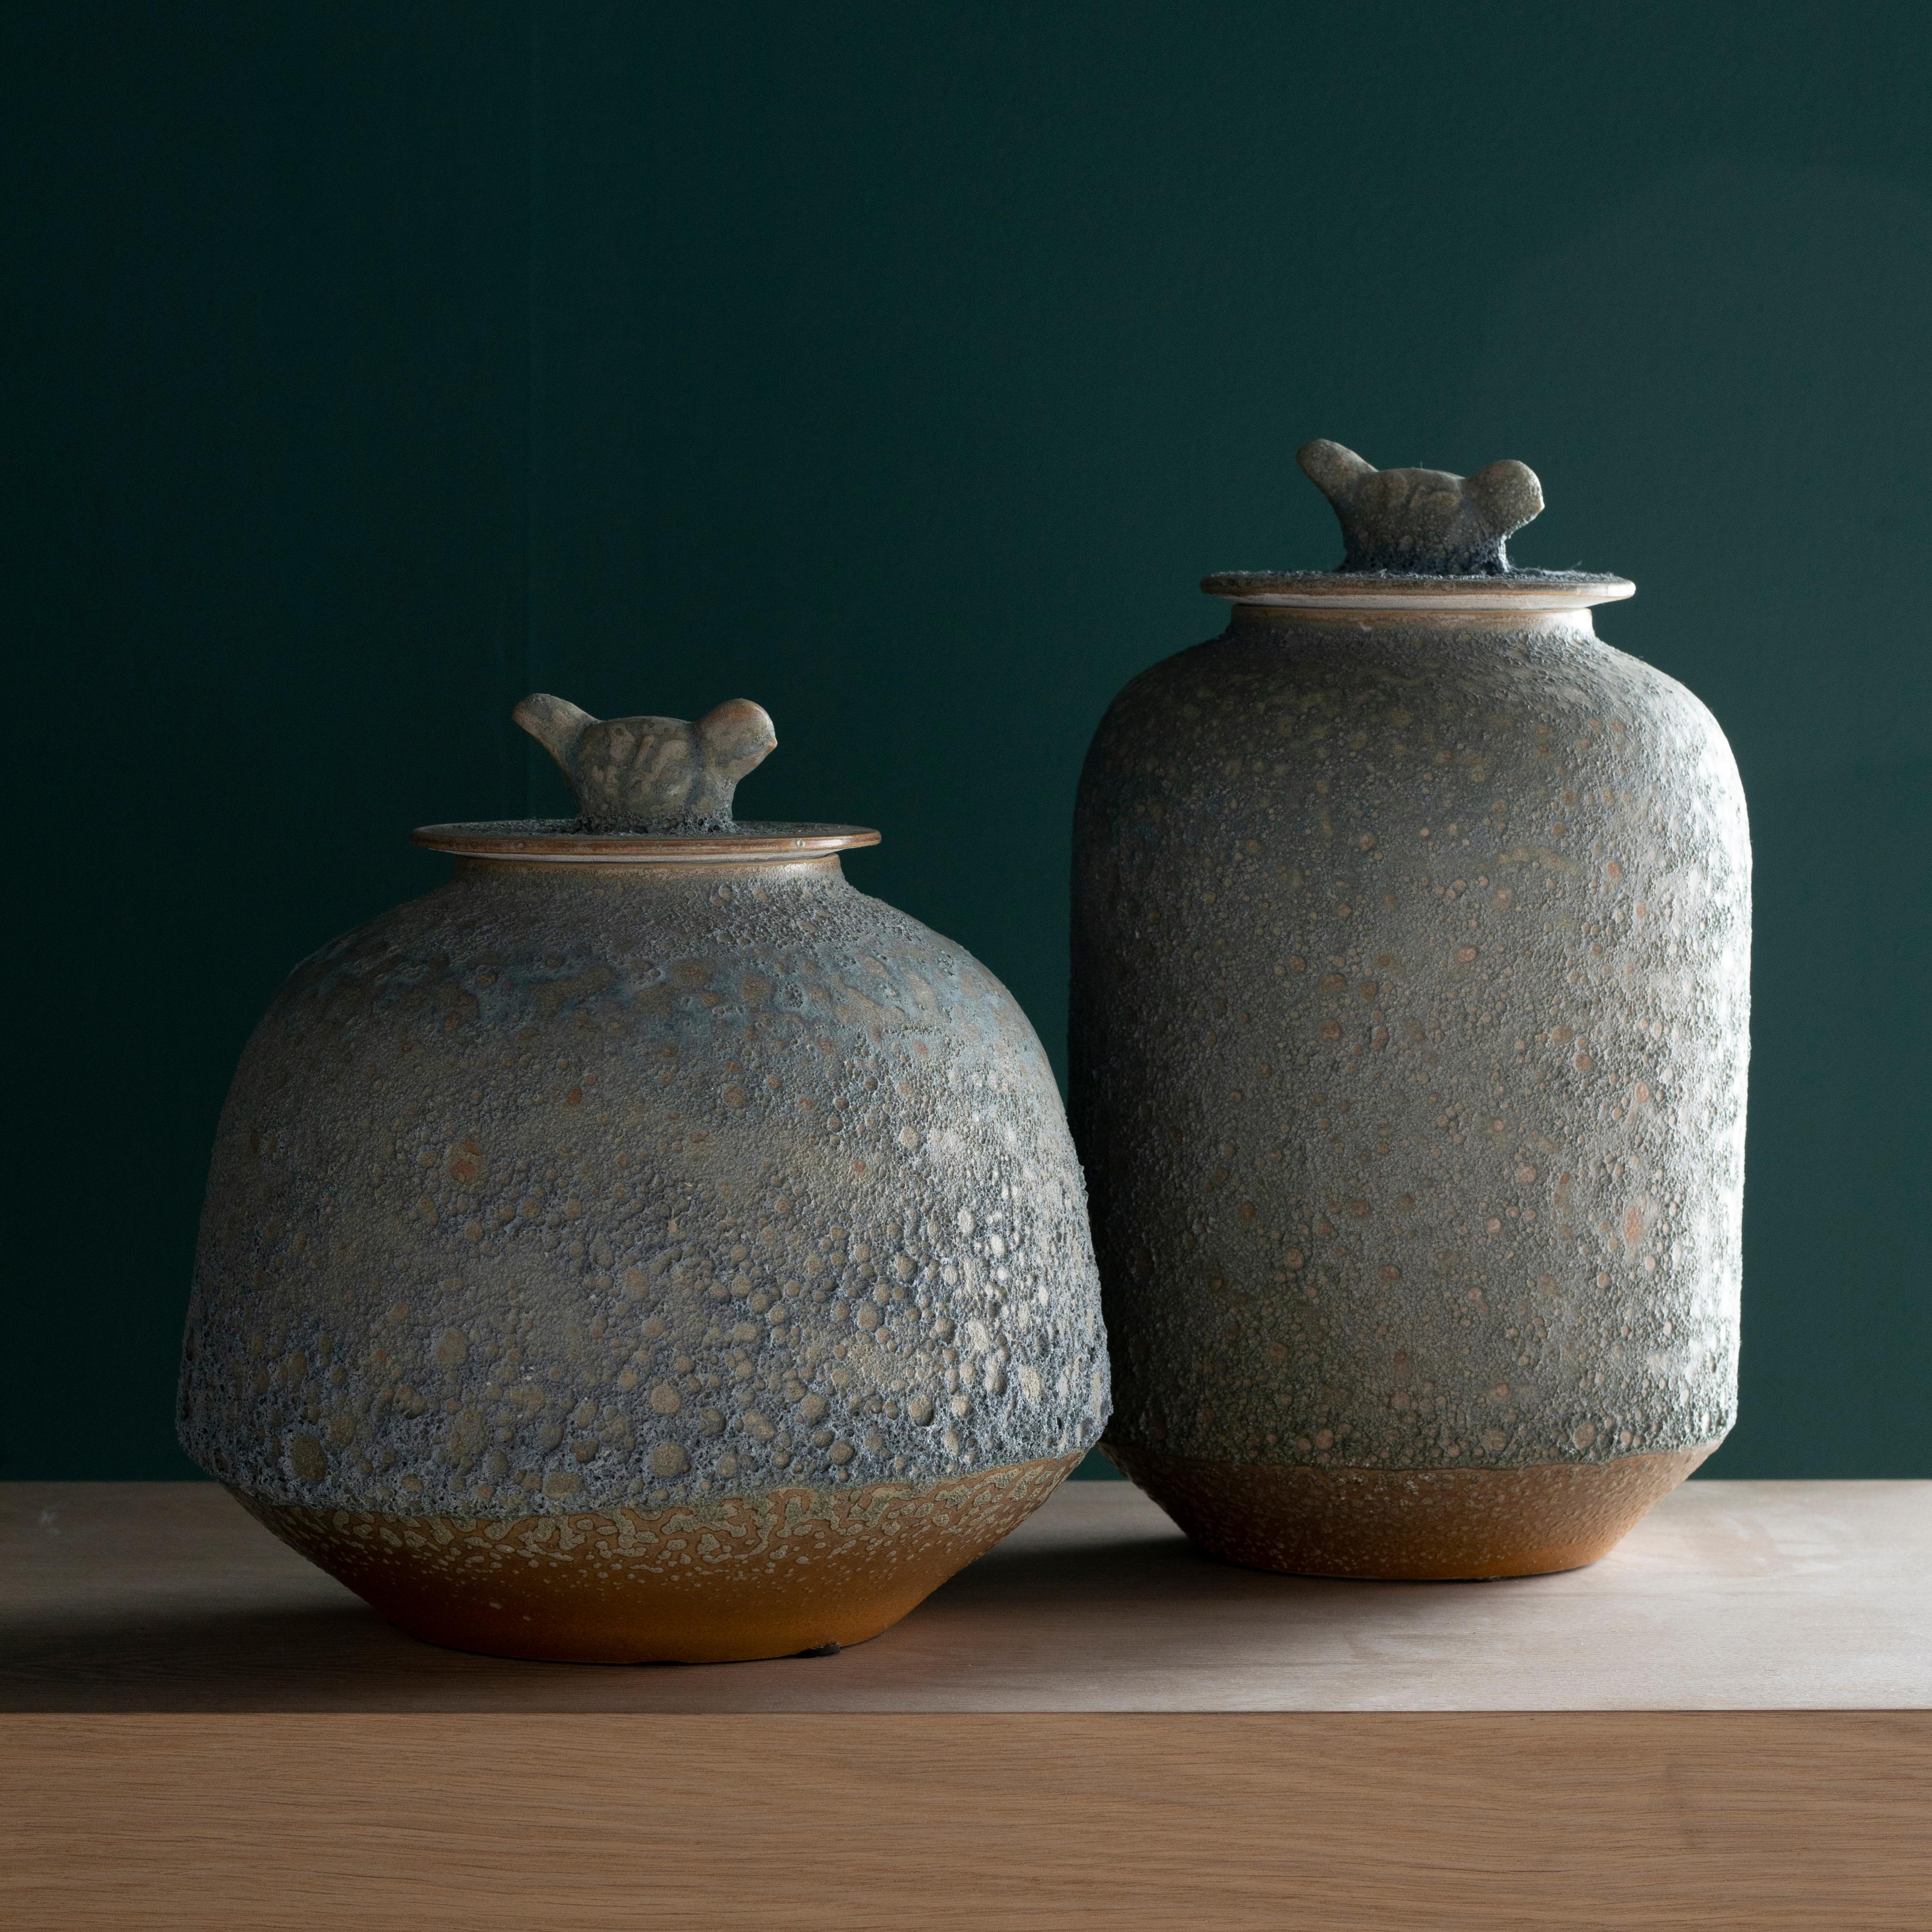 Set/2 pots en porcelaine Yang, Collection 'Lusitanus Home' de Lusitanus Home.

Véritables pots étanches en porcelaine chinoise avec couvercles en bleu clair, fabriqués à la main selon des méthodes traditionnelles. La relation de longue date entre le